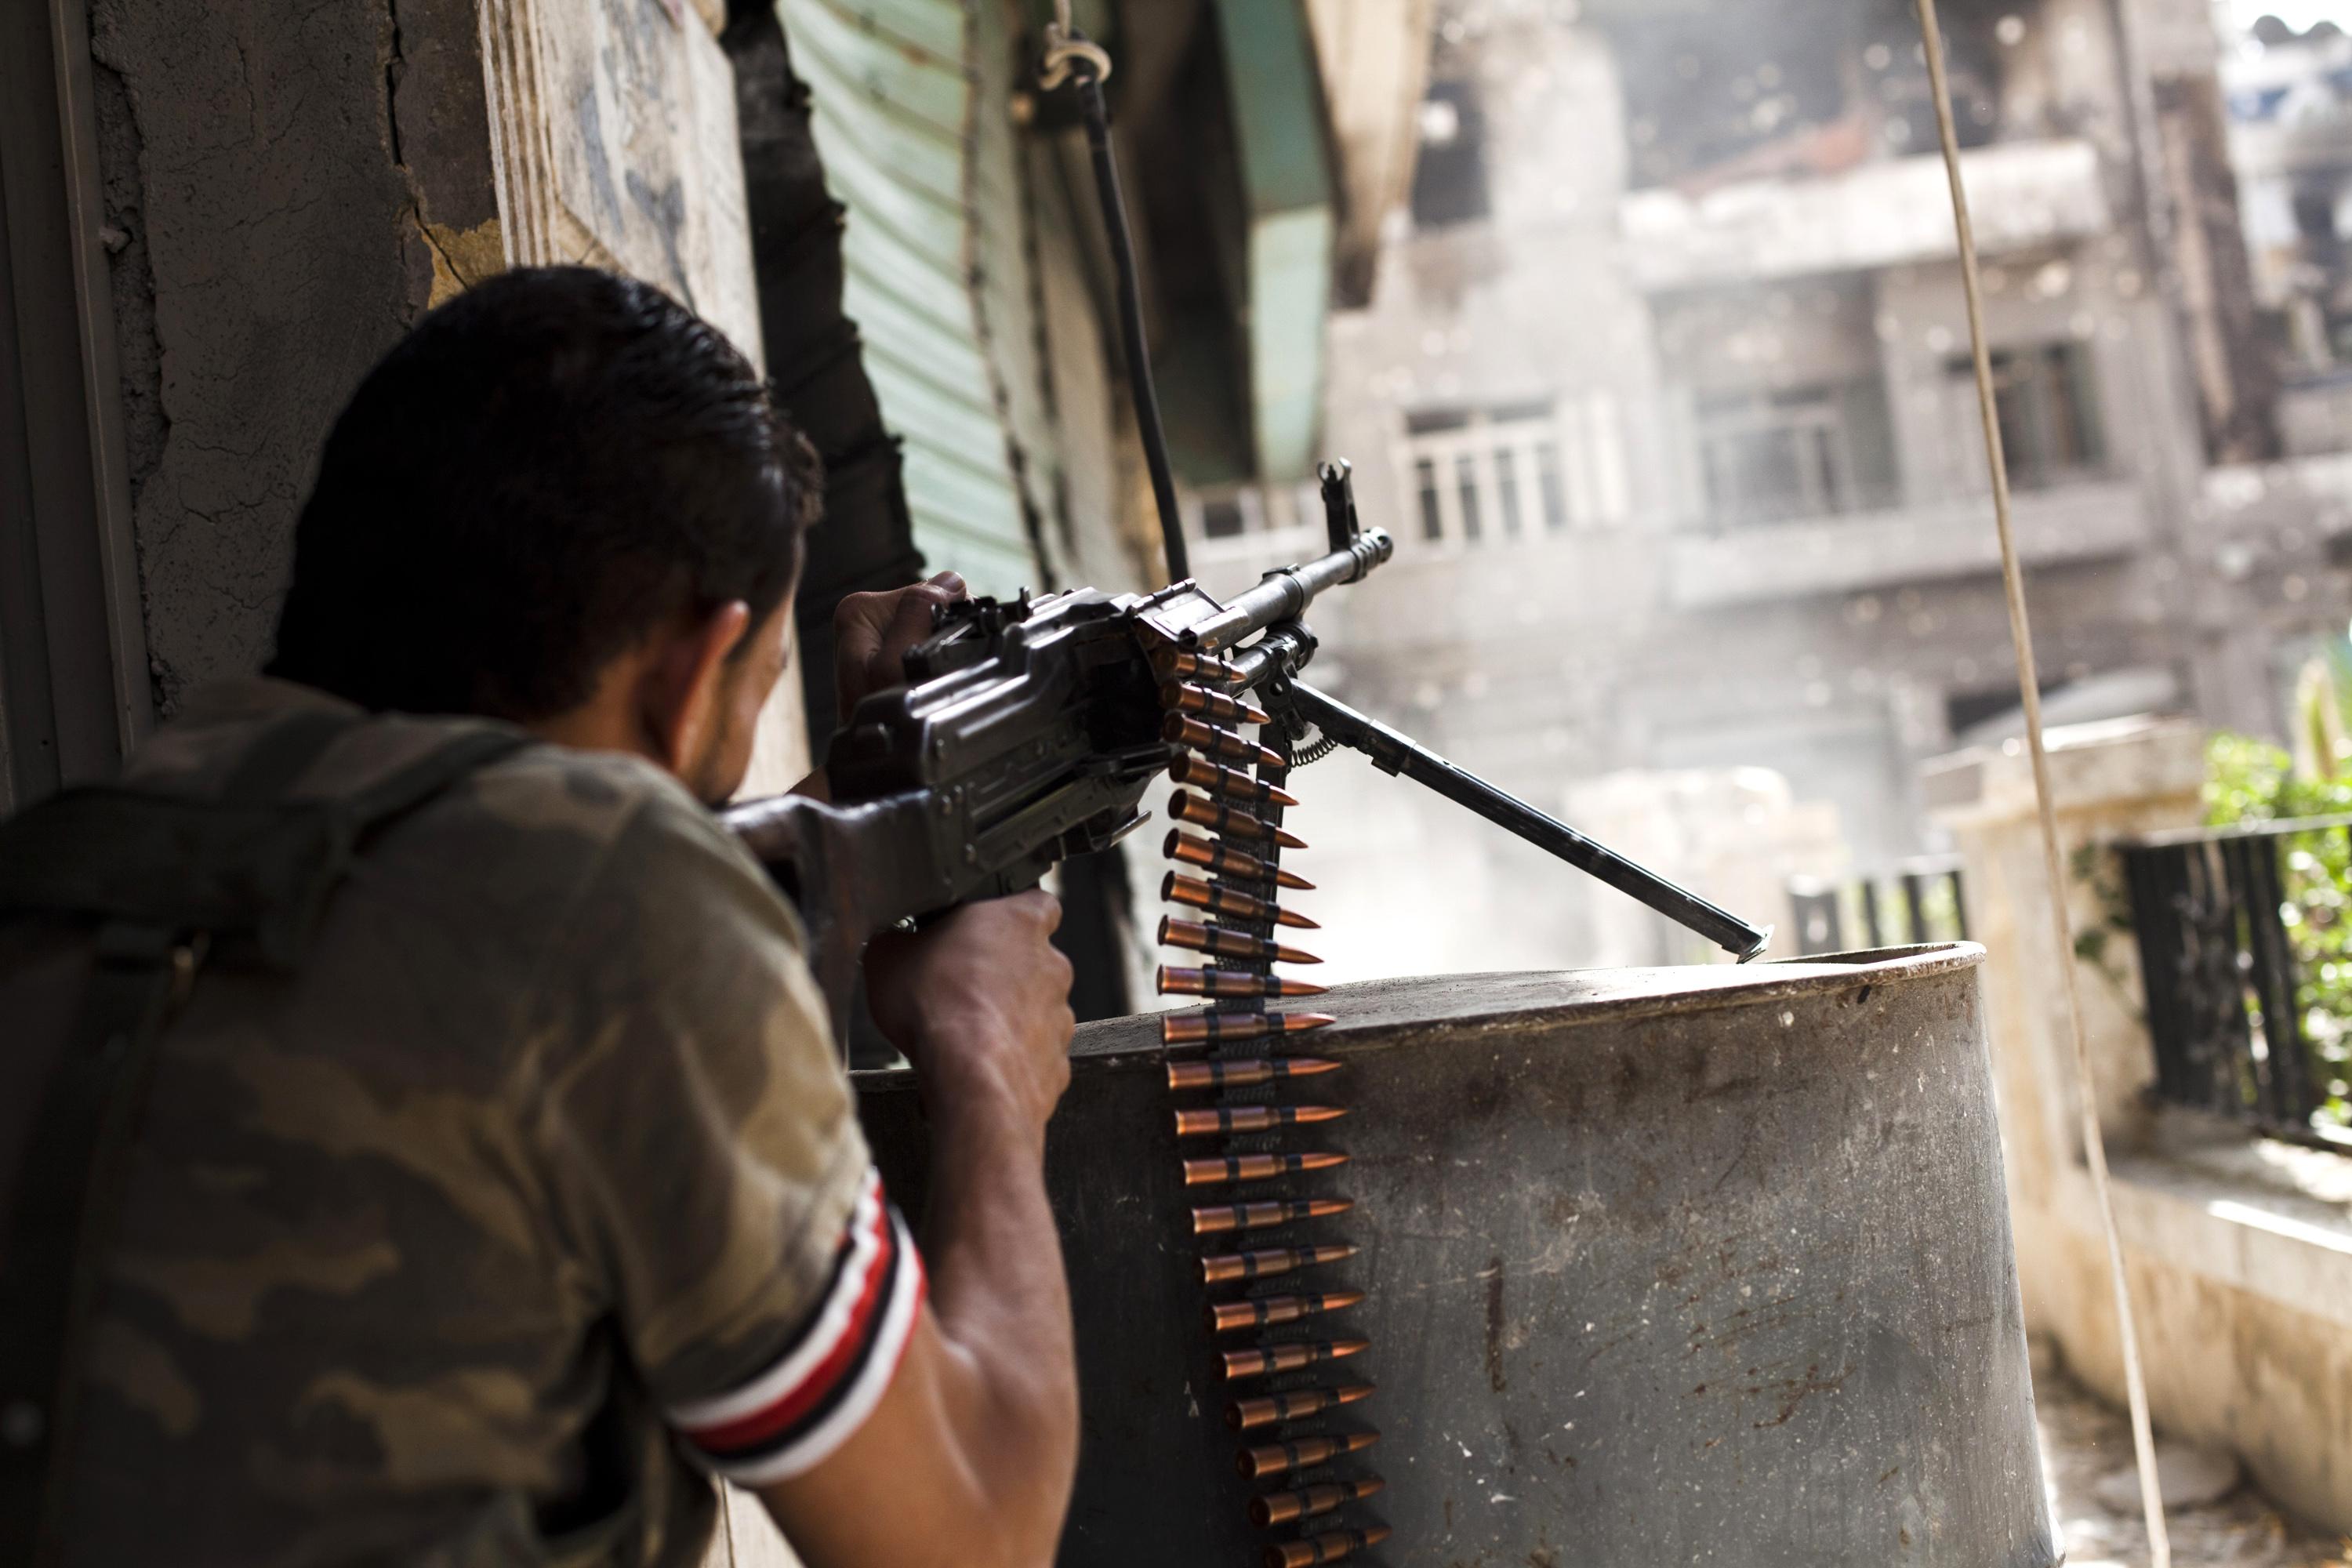 
En syrisk rebell skjuter mot regimstyrkor i Aleppo. Trots förstärkning från flera håll har den syriska armén inte gjort några stora framsteg. (Foto: Achilleas Zavallis /AFP/Getty Images)